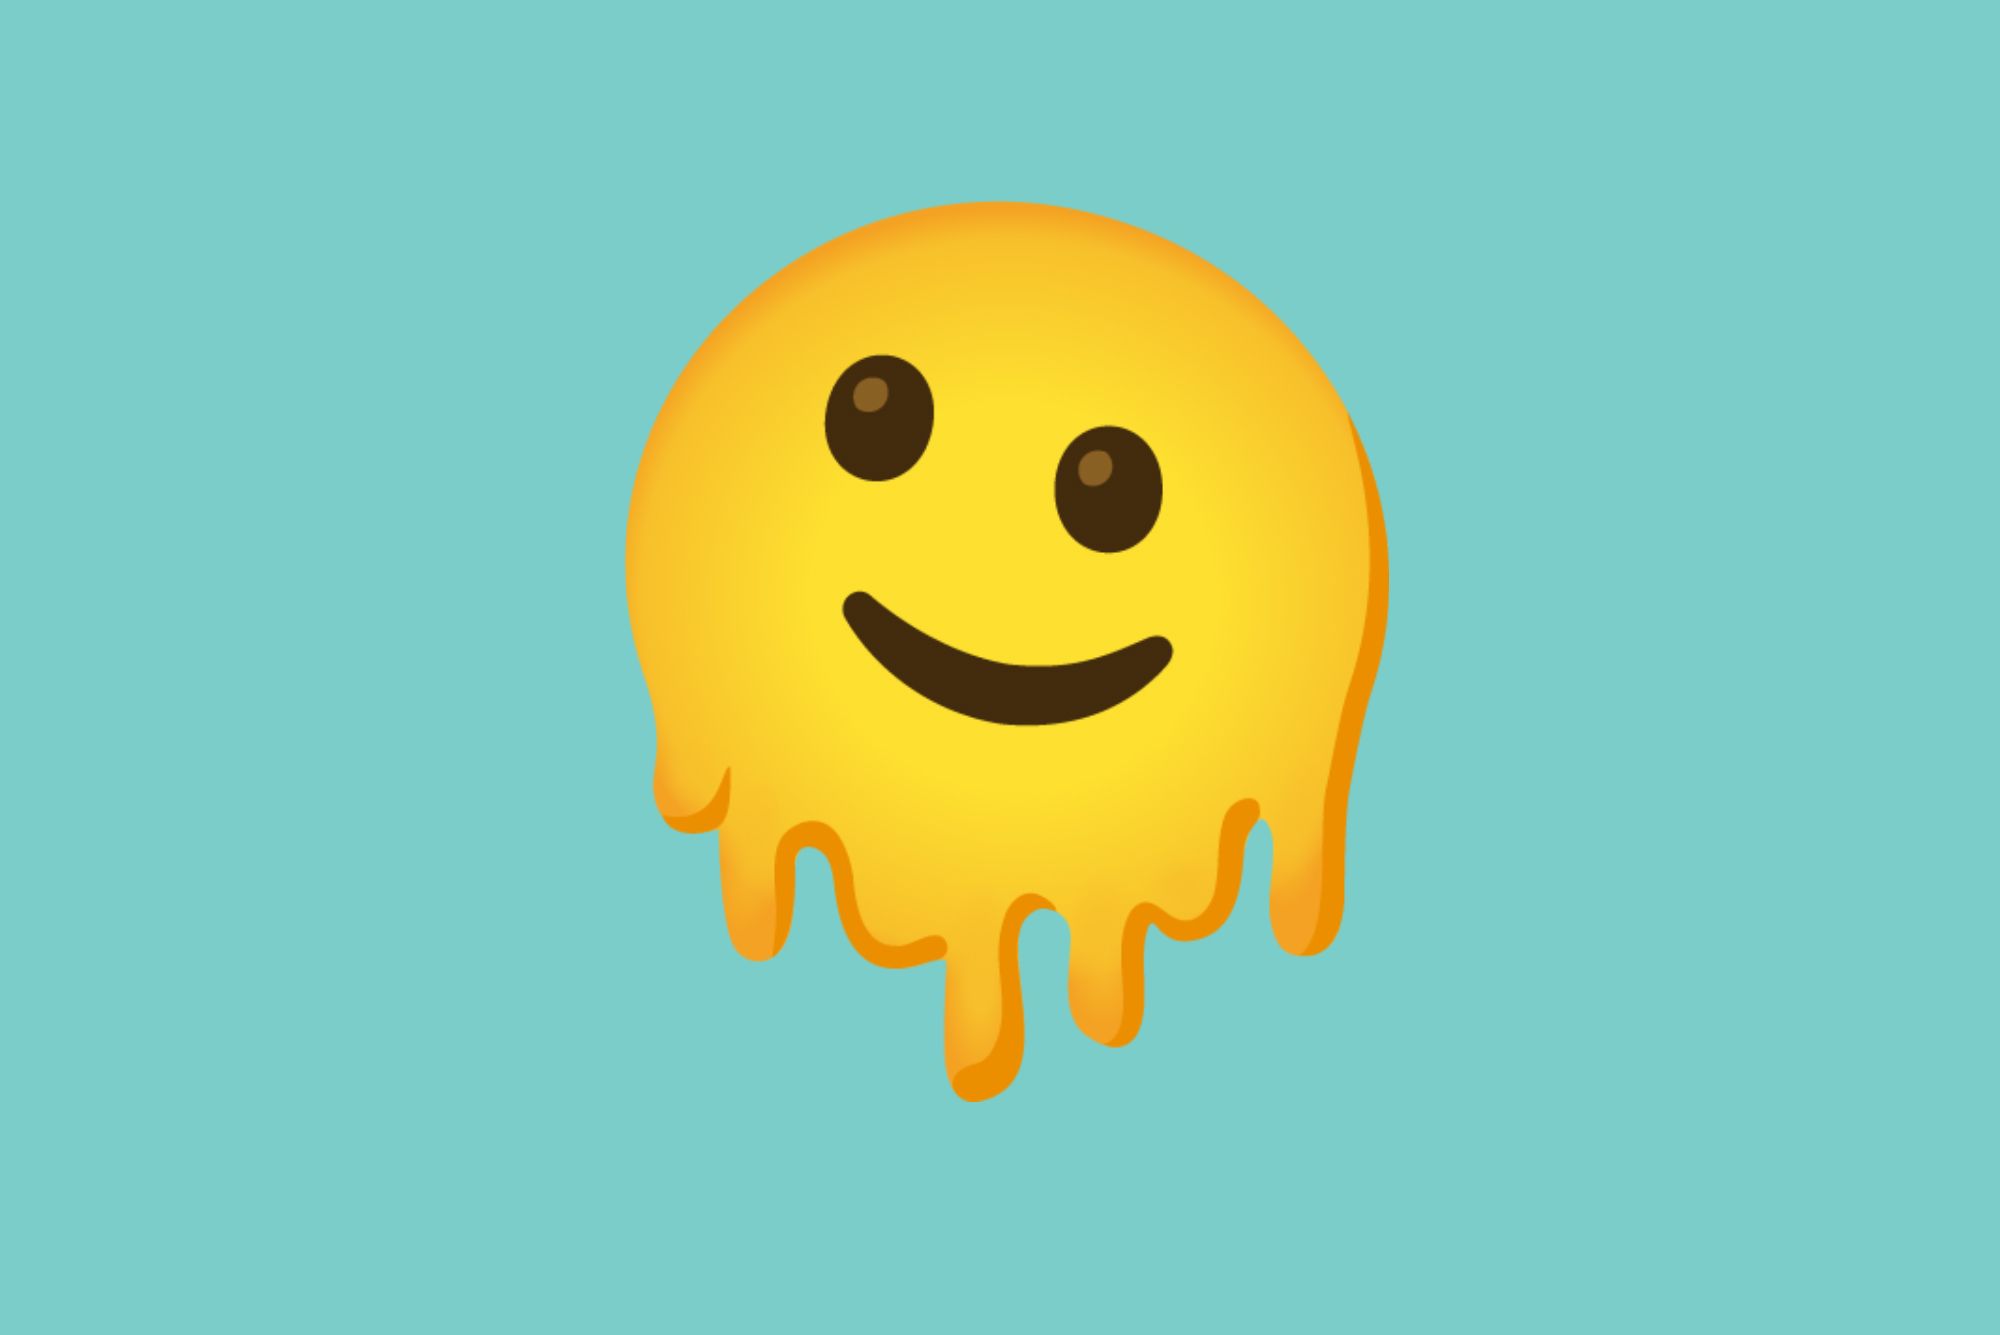 Google Emoji 14.0 Changelog - Bạn yêu thích sử dụng Emoji khi giao tiếp với bạn bè, gia đình và đồng nghiệp? Bạn chắc chắn sẽ thích nhật ký thay đổi Emoji Google 14.0 của chúng tôi. Được cập nhật và nâng cấp liên tục, đây là một bộ Emoji tuyệt vời để thể hiện cảm xúc và truyền tải thông điệp tốt nhất. Khám phá ngay!